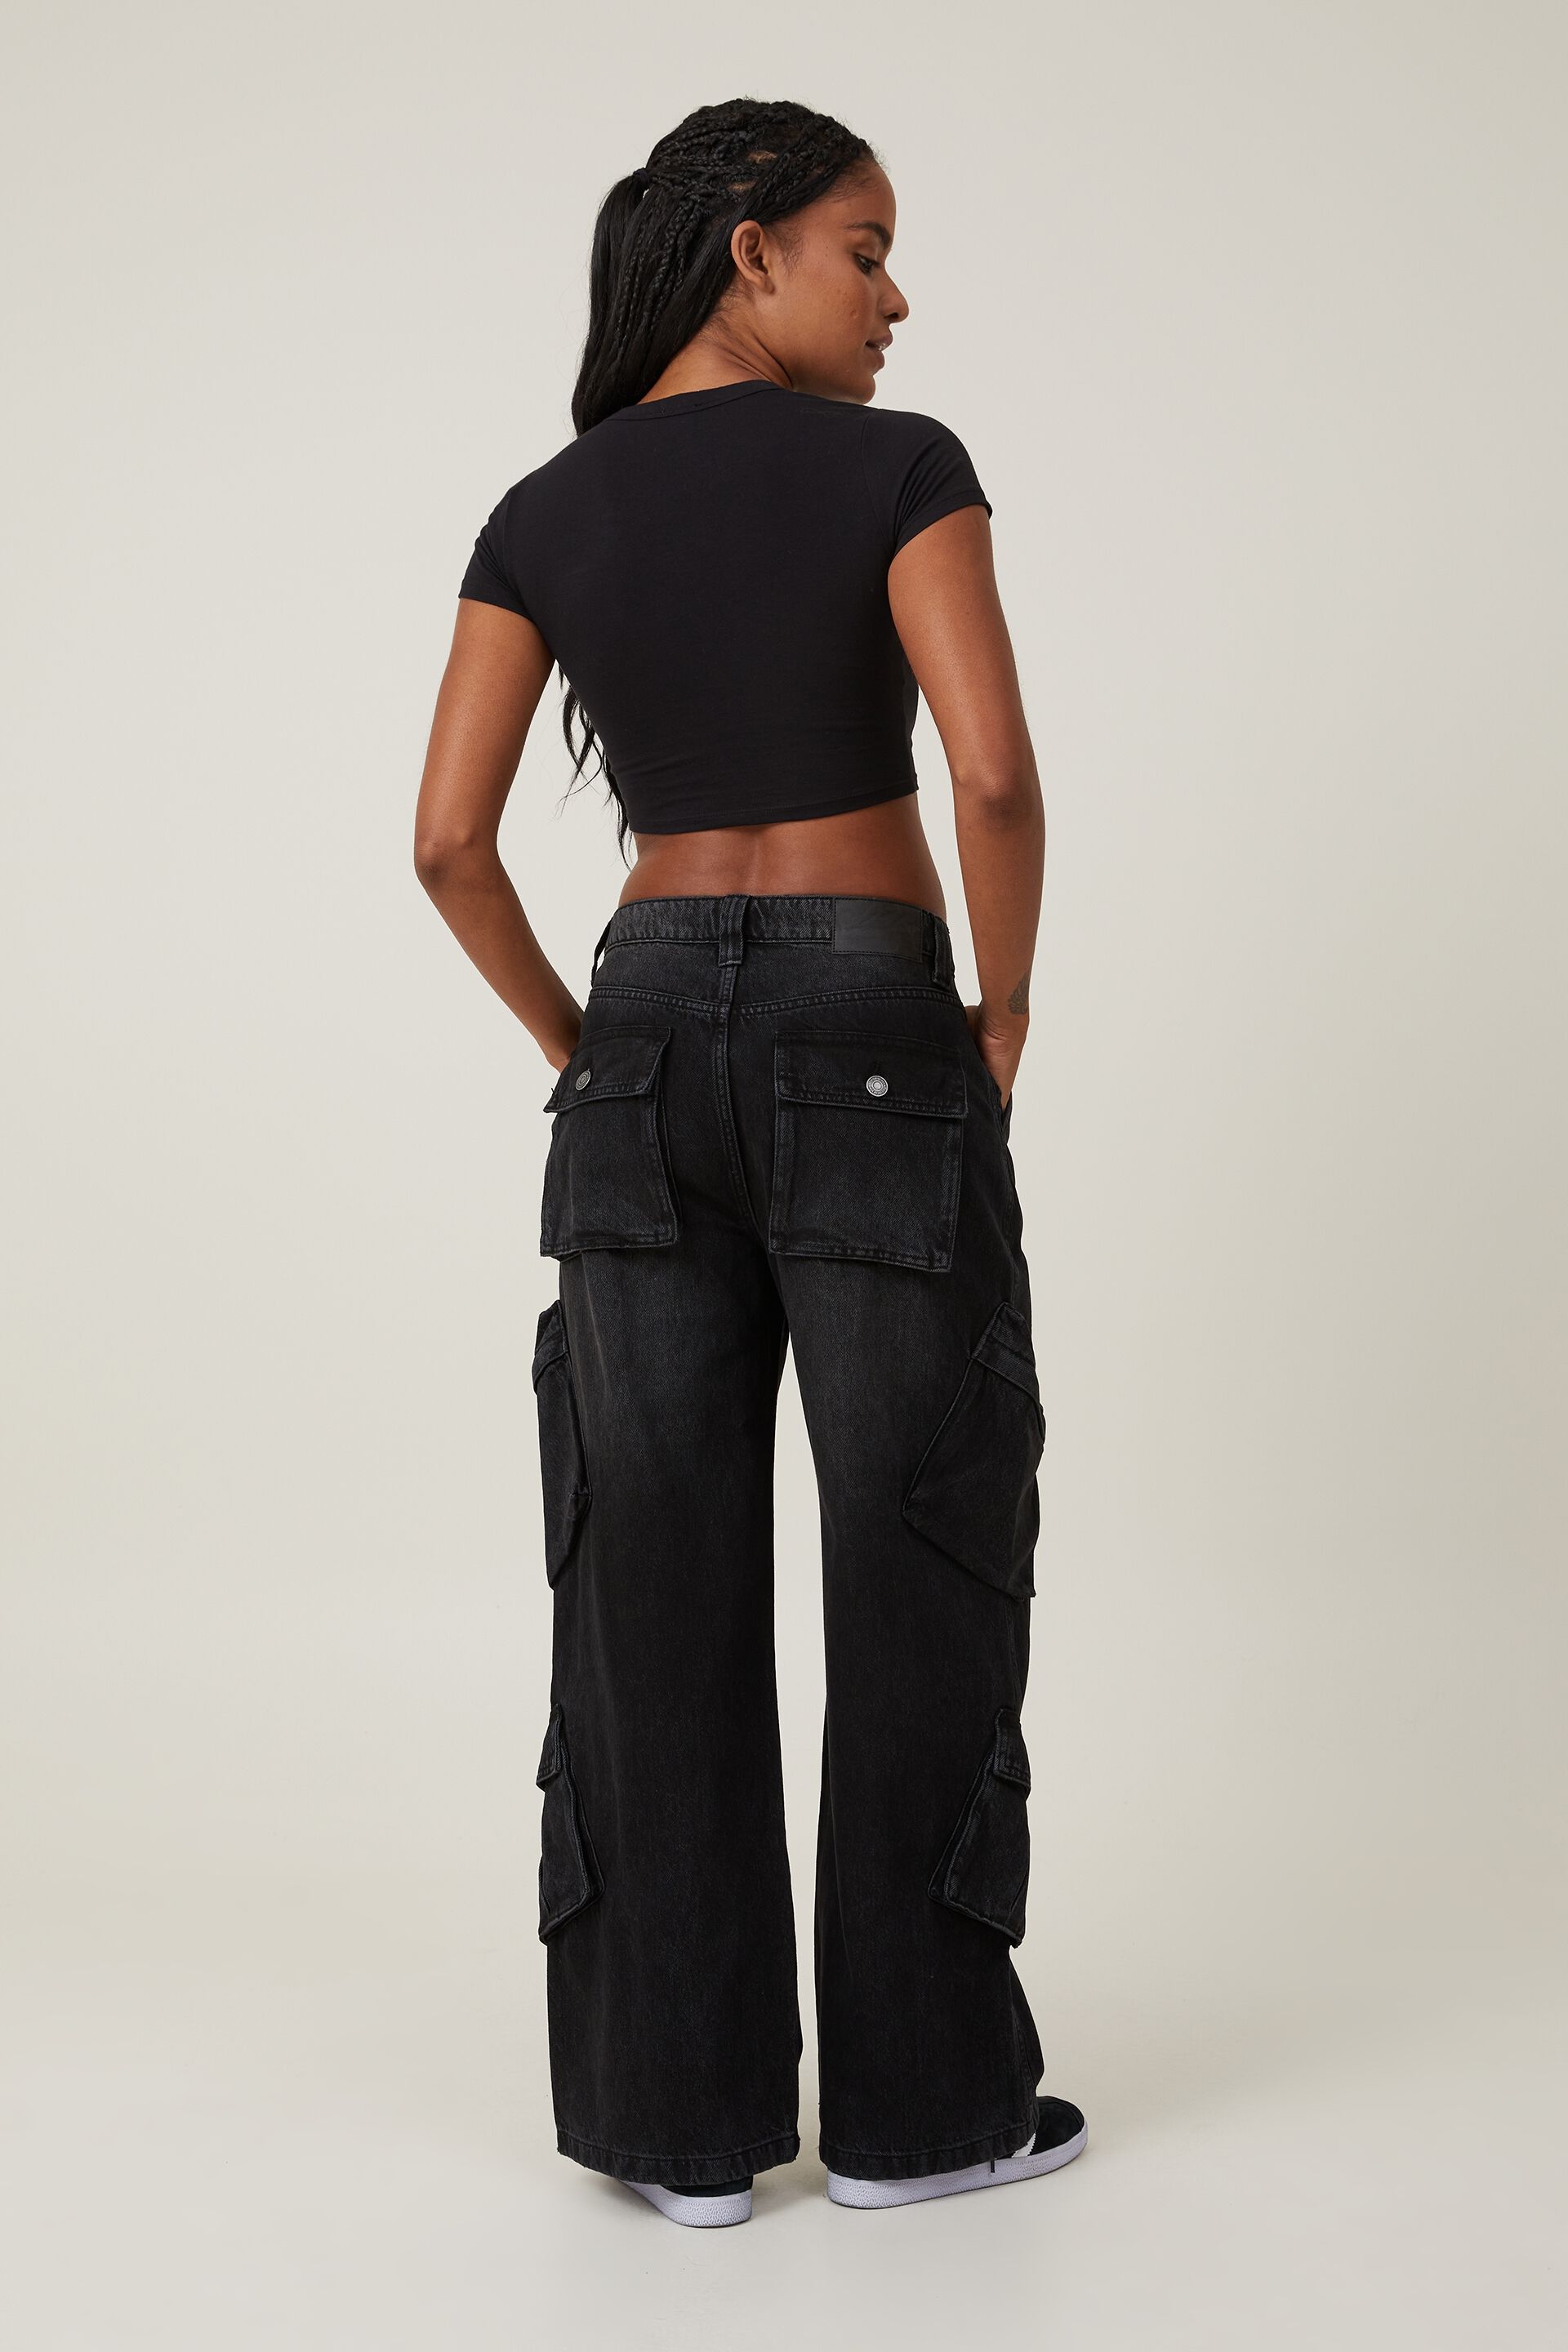 AUTOGRAPH - Plus Size - Womens Jeans - Blue Ankle Length - Denim - Cotton  Pants | eBay